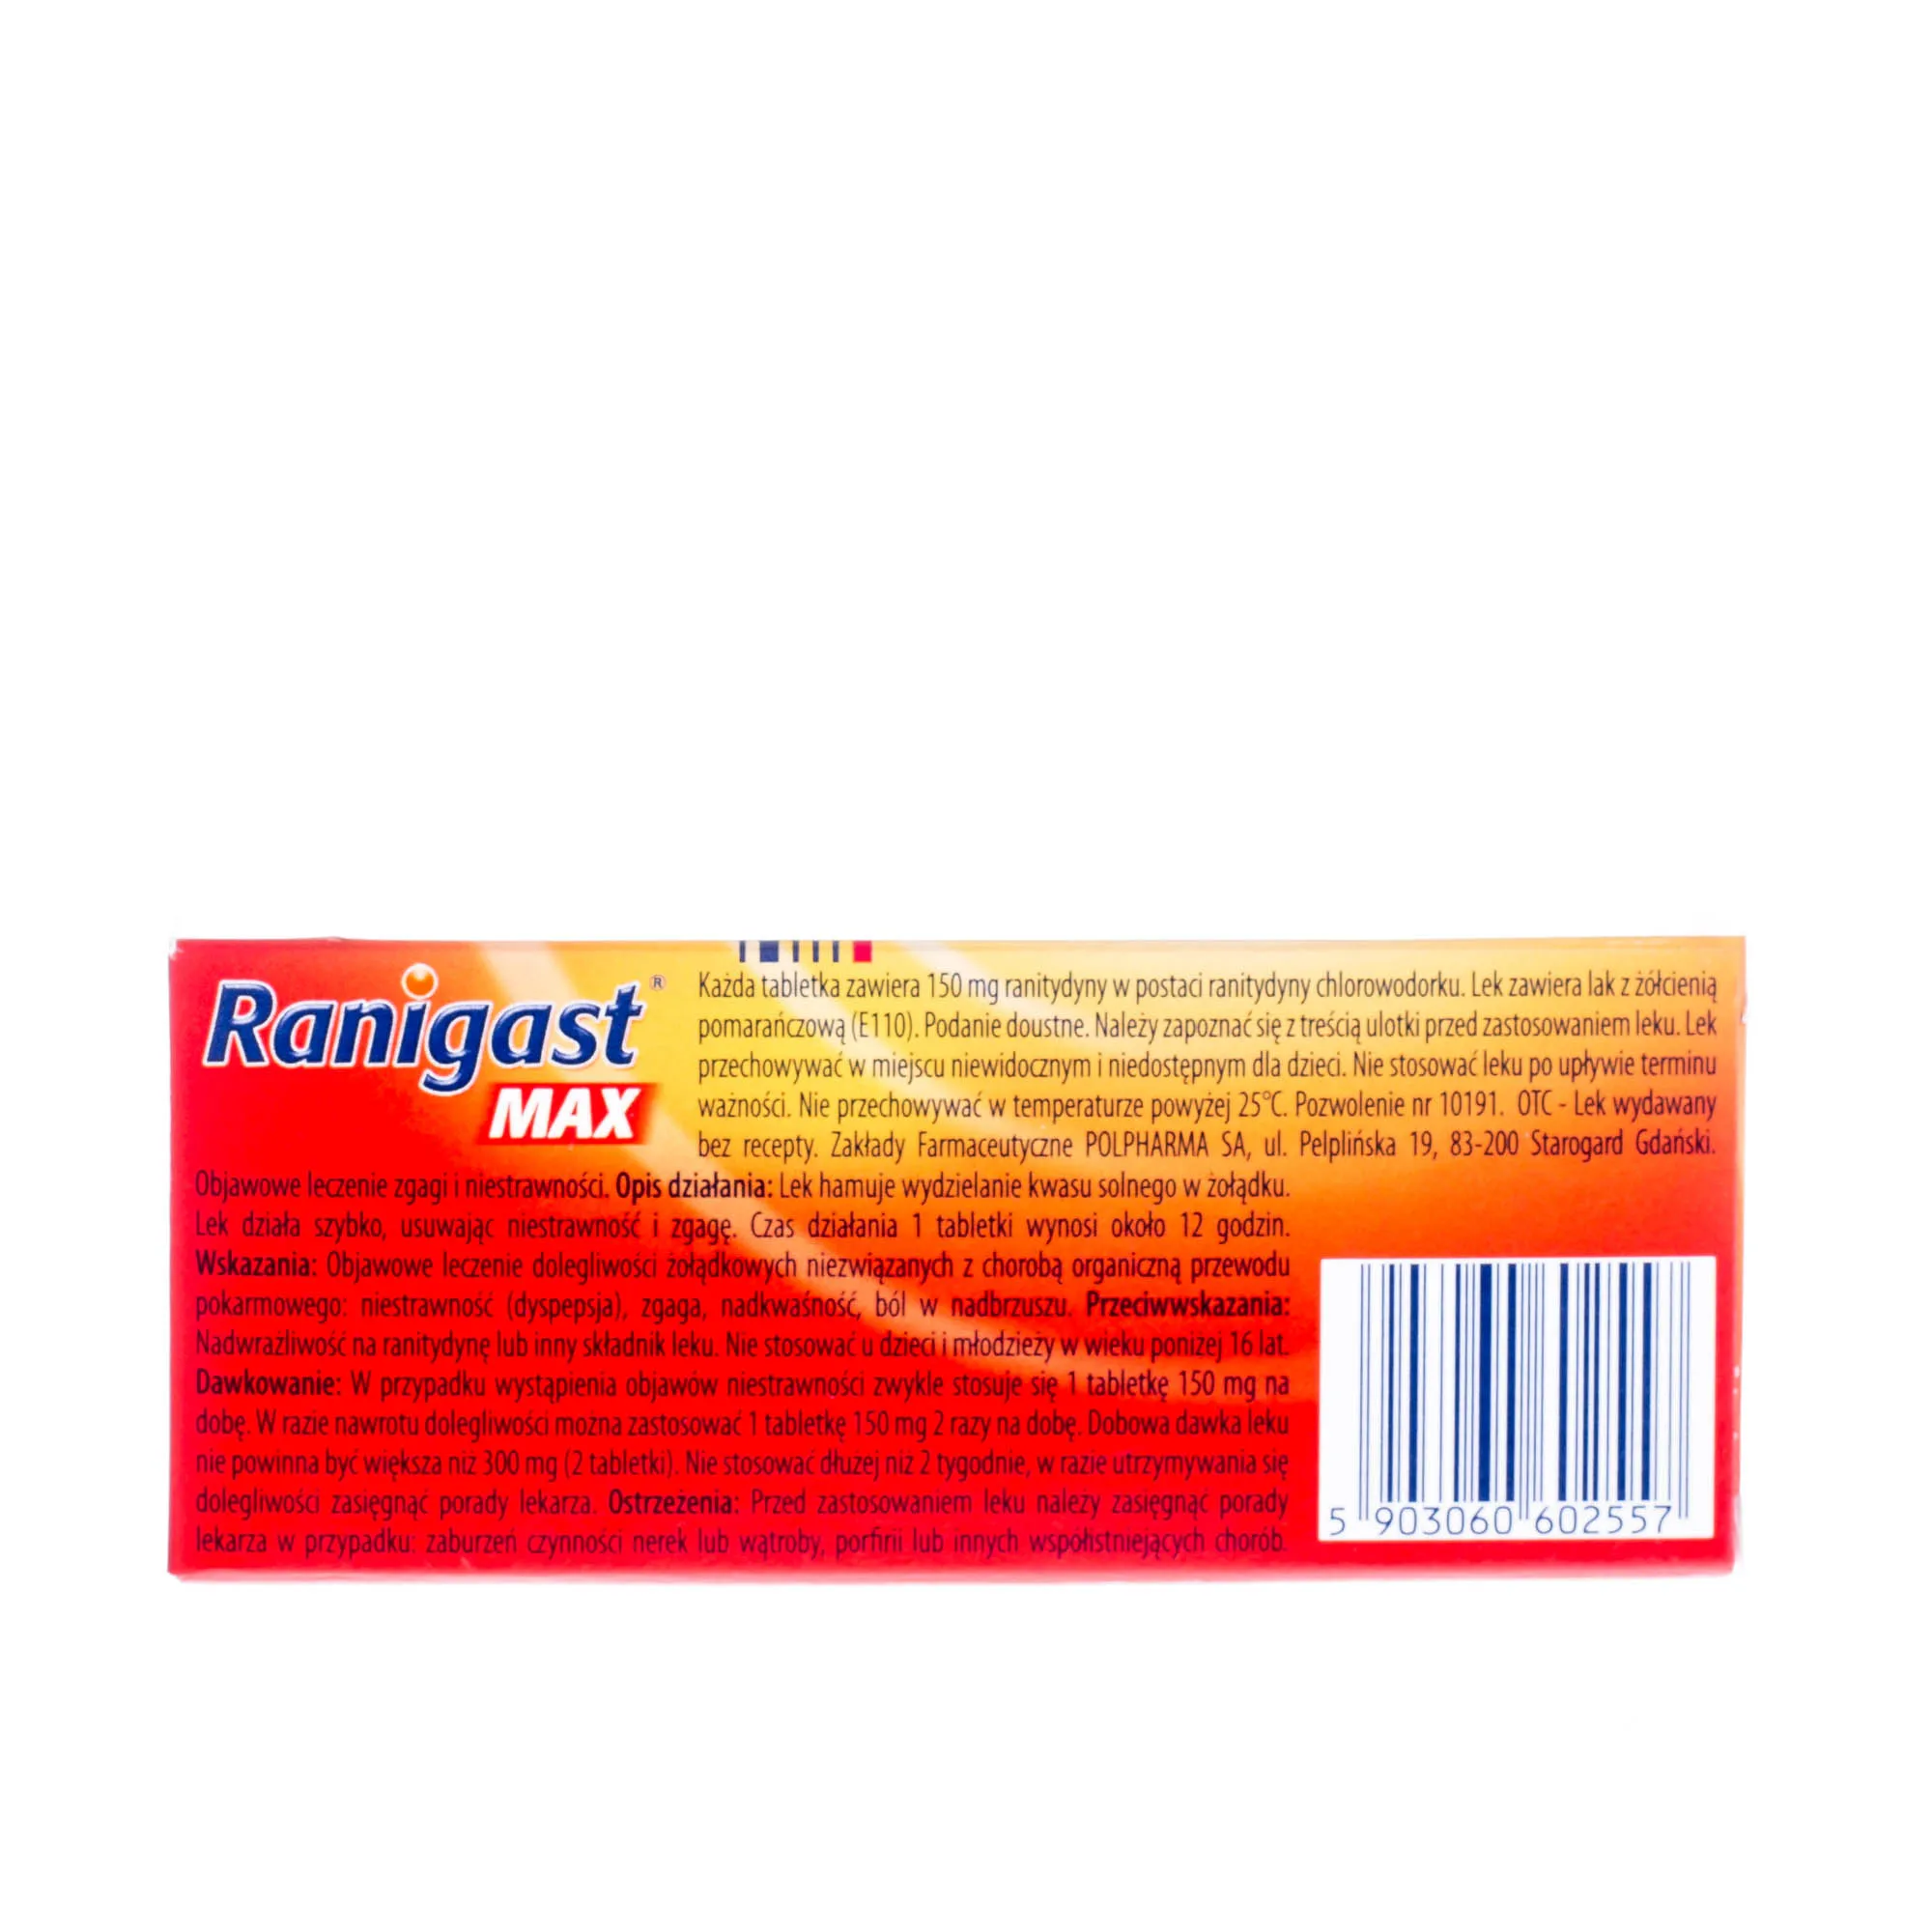 Ranigast Max 150 mg - 30 tabetek powlekanych stosowanych przy leczeniu zgagi i niestrawności 